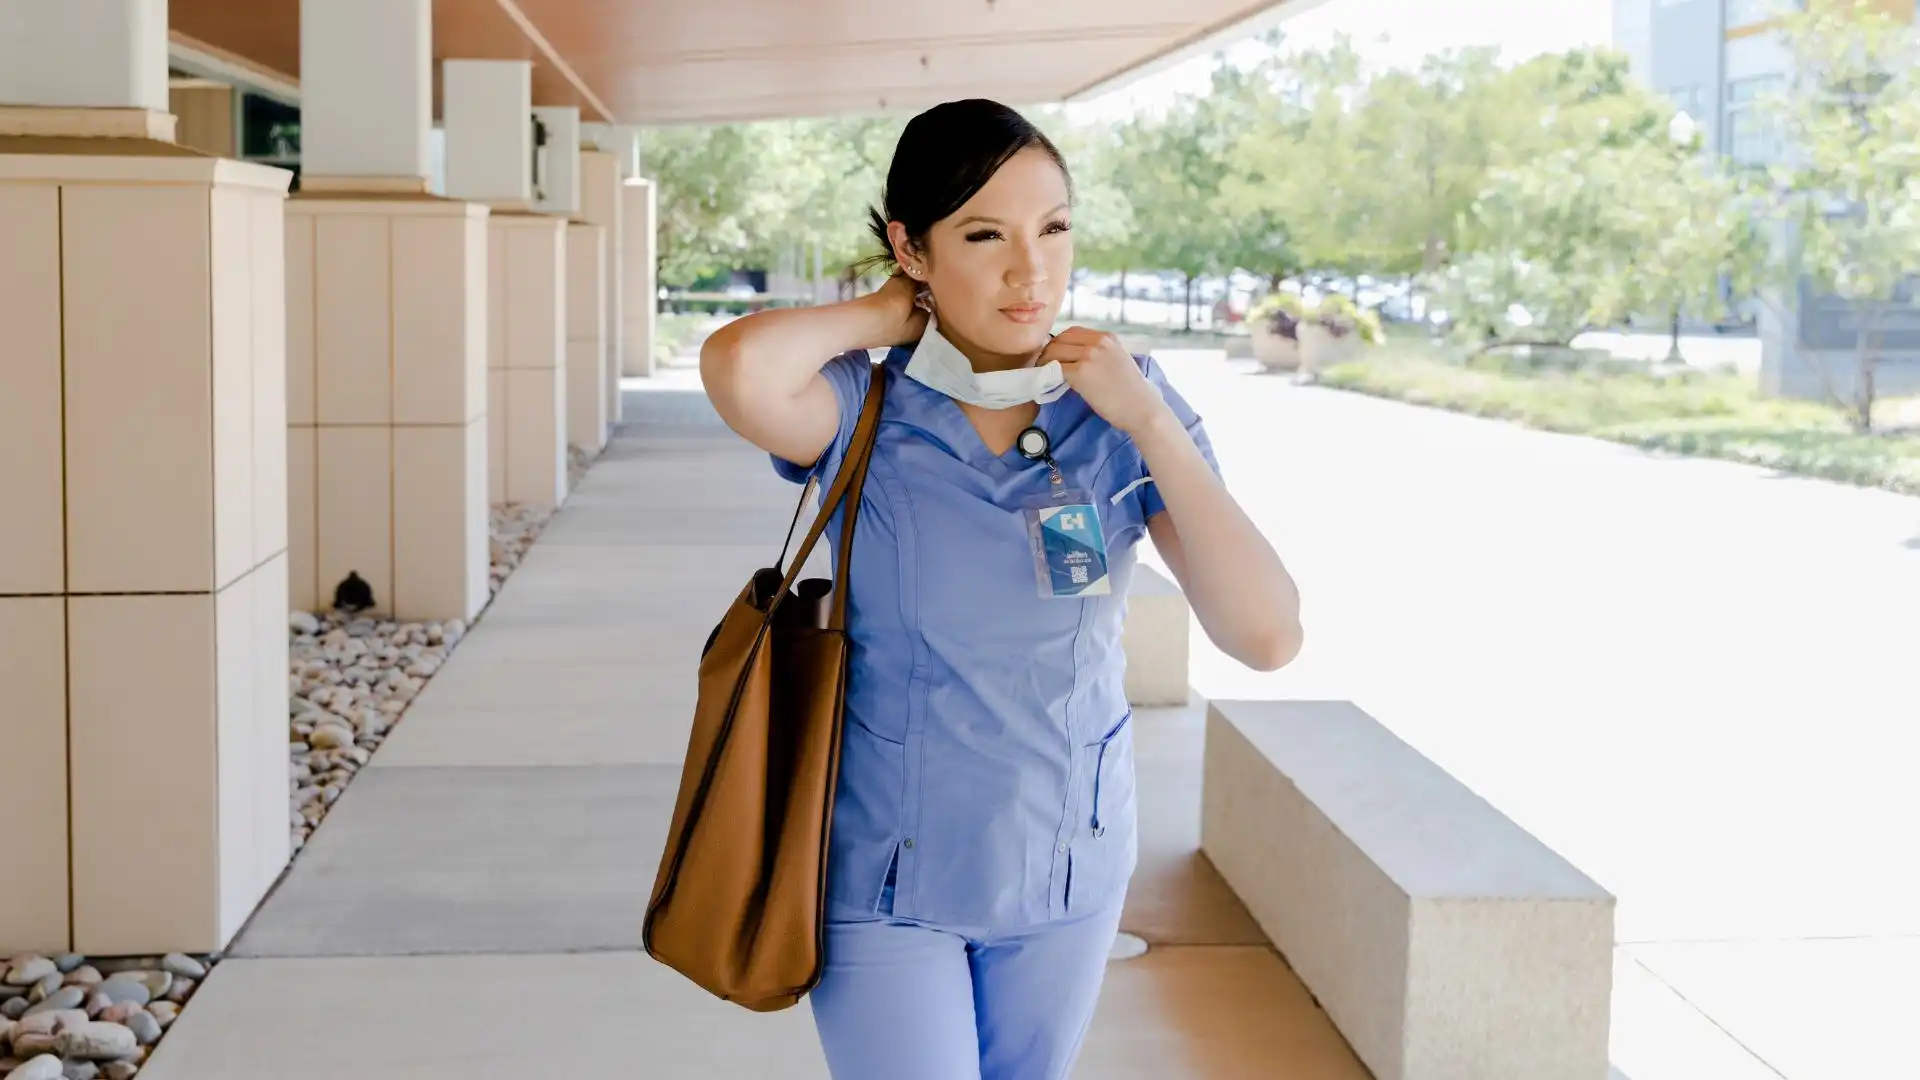 nurse walking down side walk